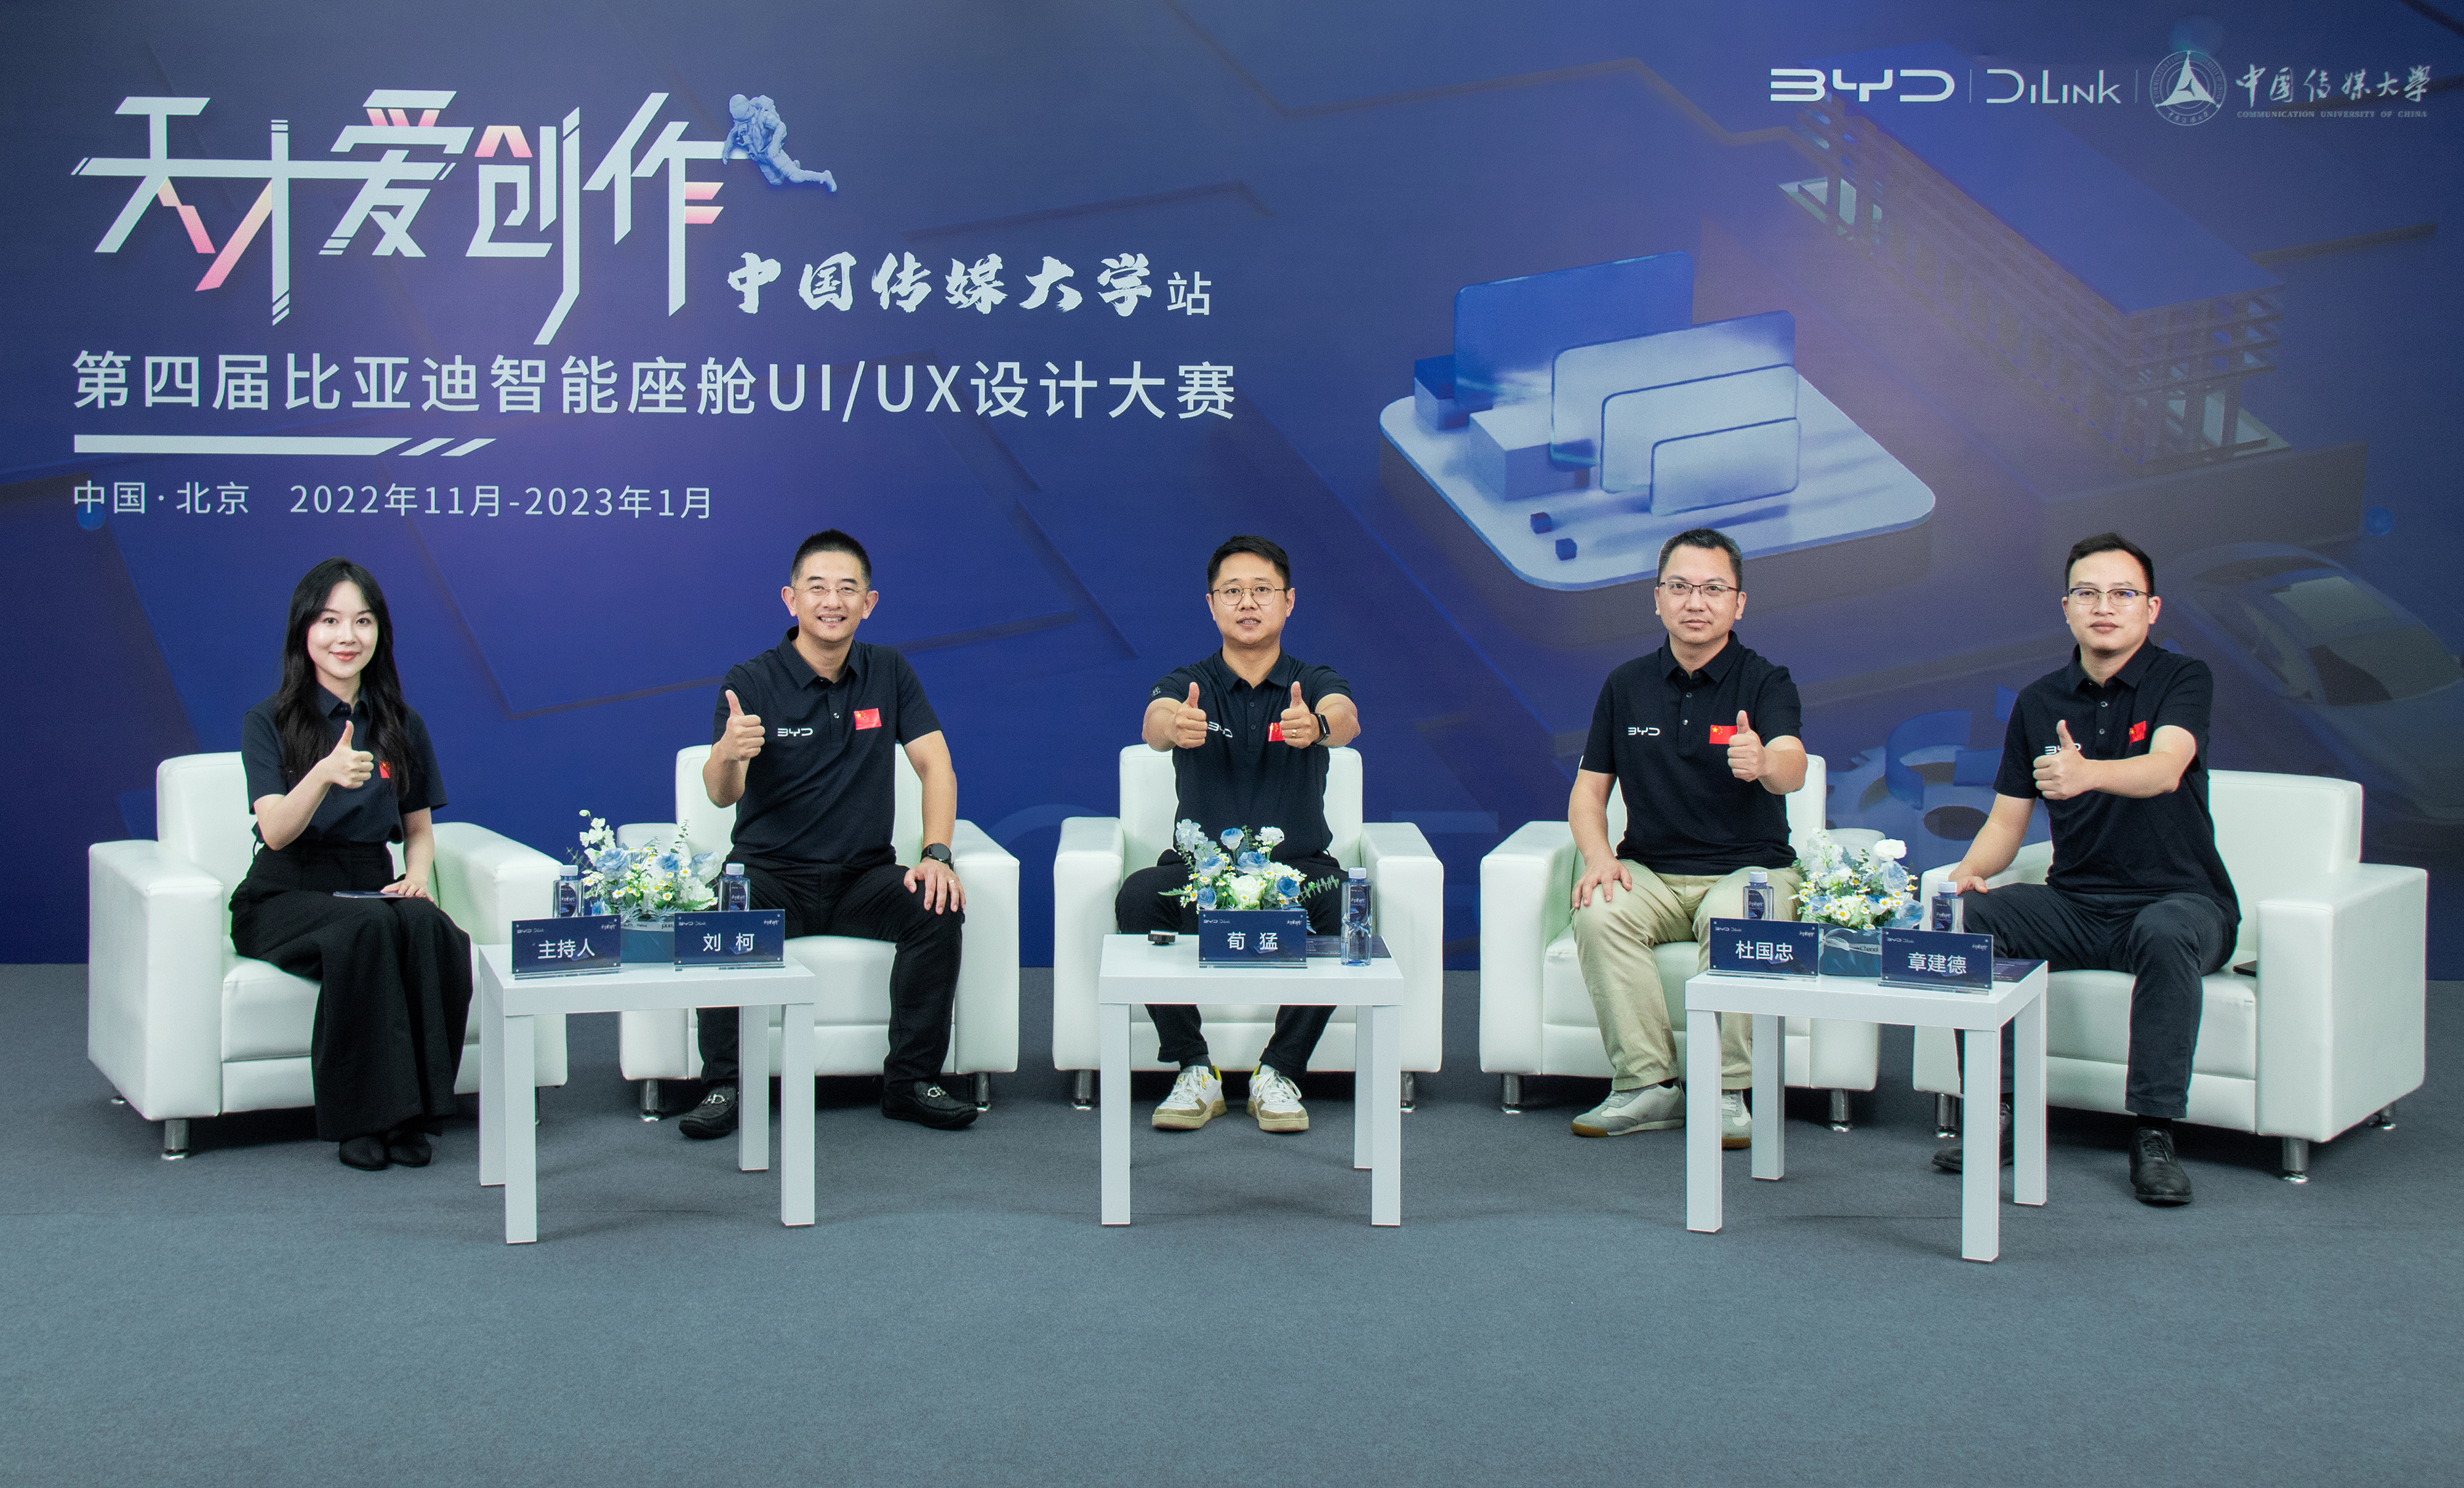 「天才爱创作」第四届智能座舱UI/UX设计大赛“中国传媒大学站”见面会正式启幕